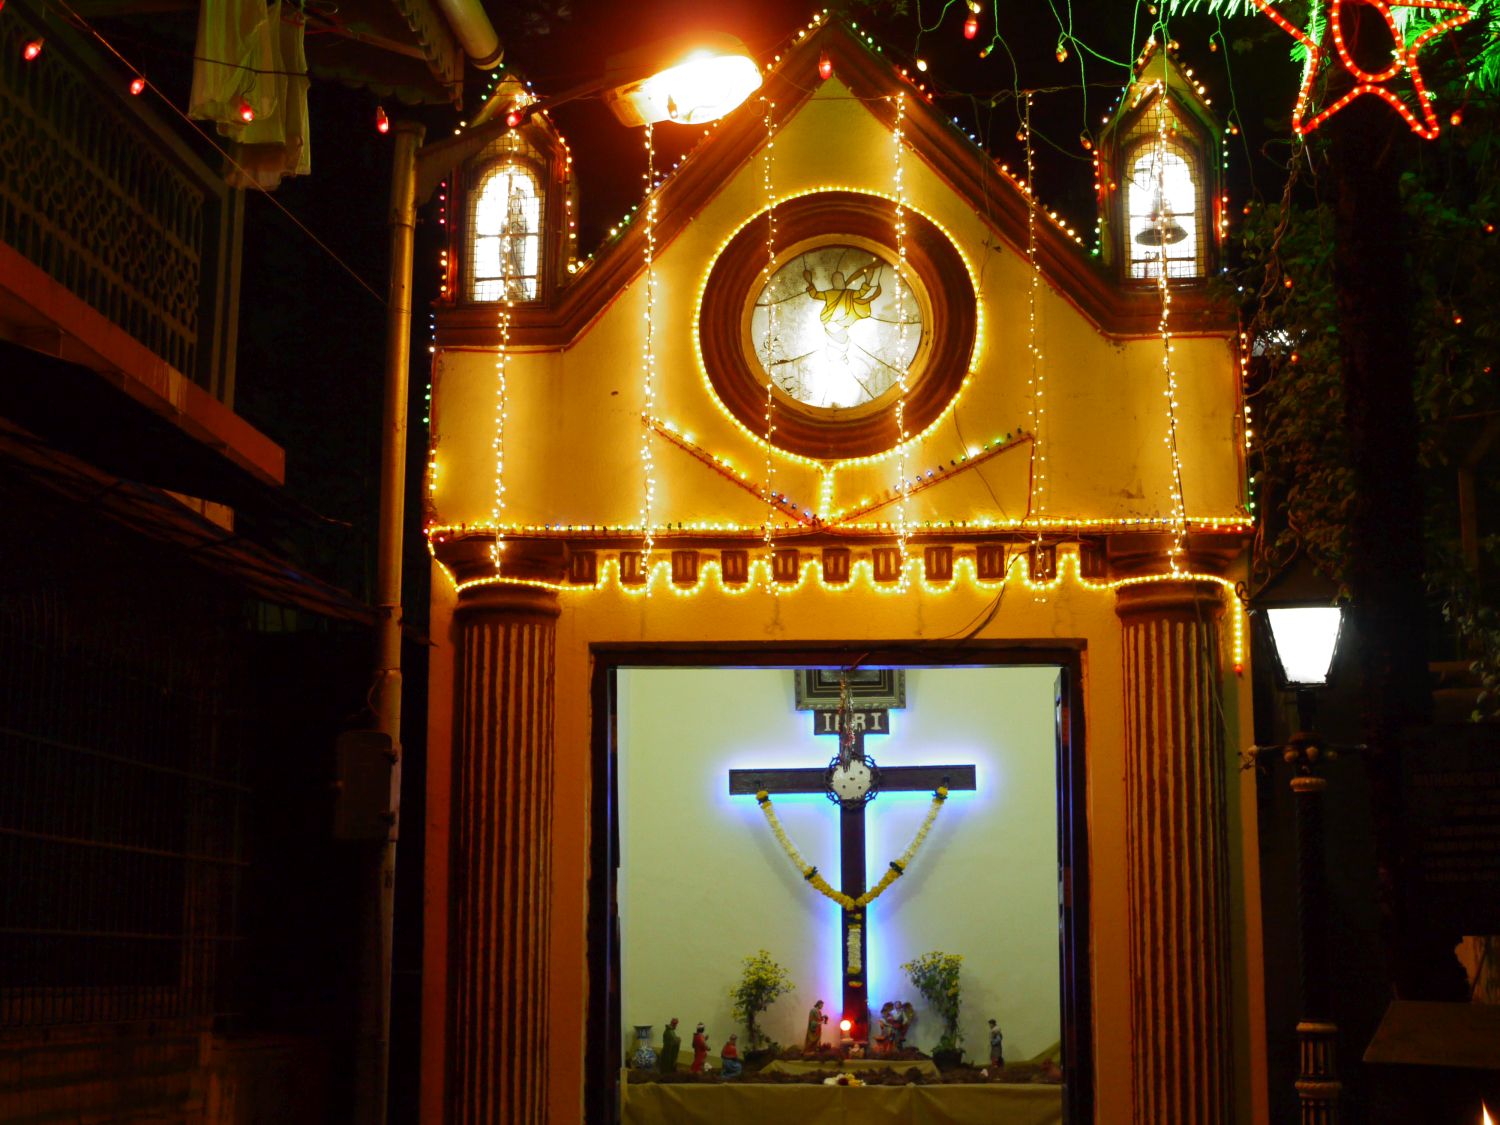 The Oart Holy Cross Oratory